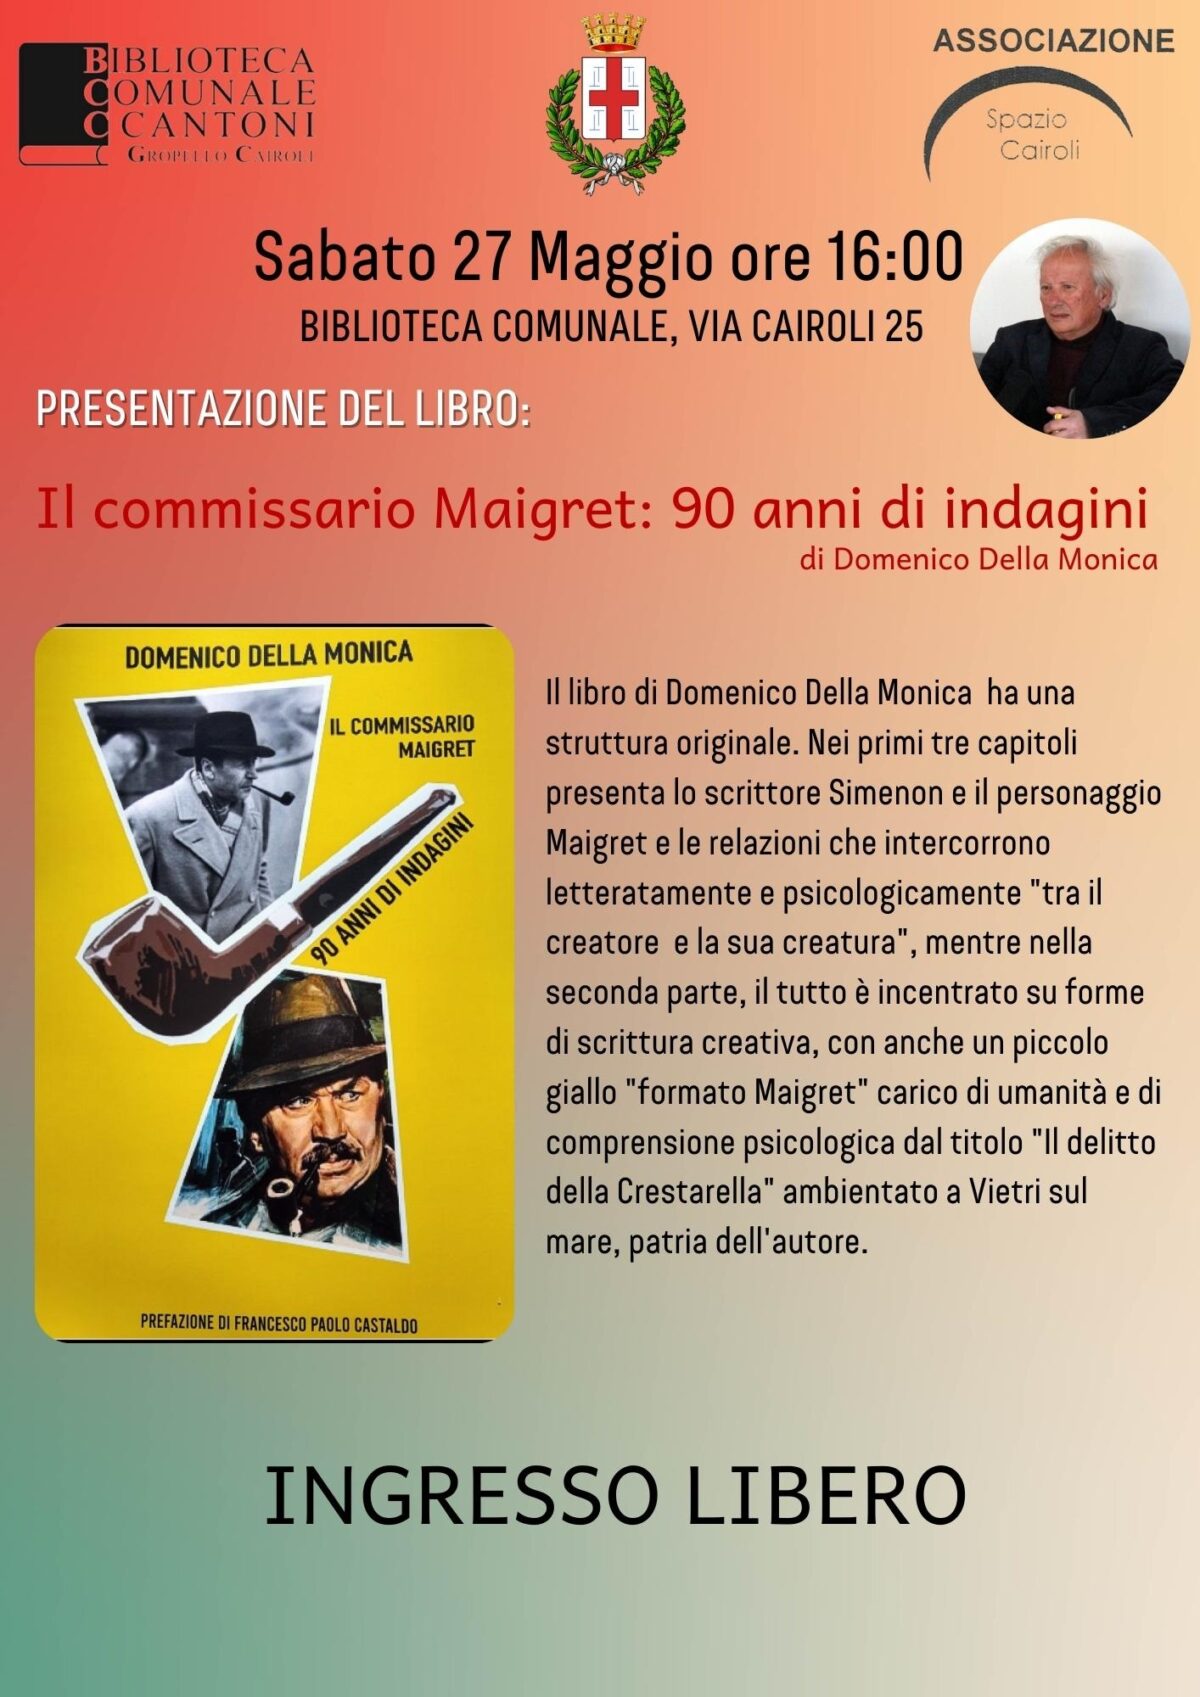 Biblioteca: sabato 27 maggio ore 16,00 presentazione del libro “Il commissario Maigret: 90 anni di indagini” di Domenico DELLA MONICA